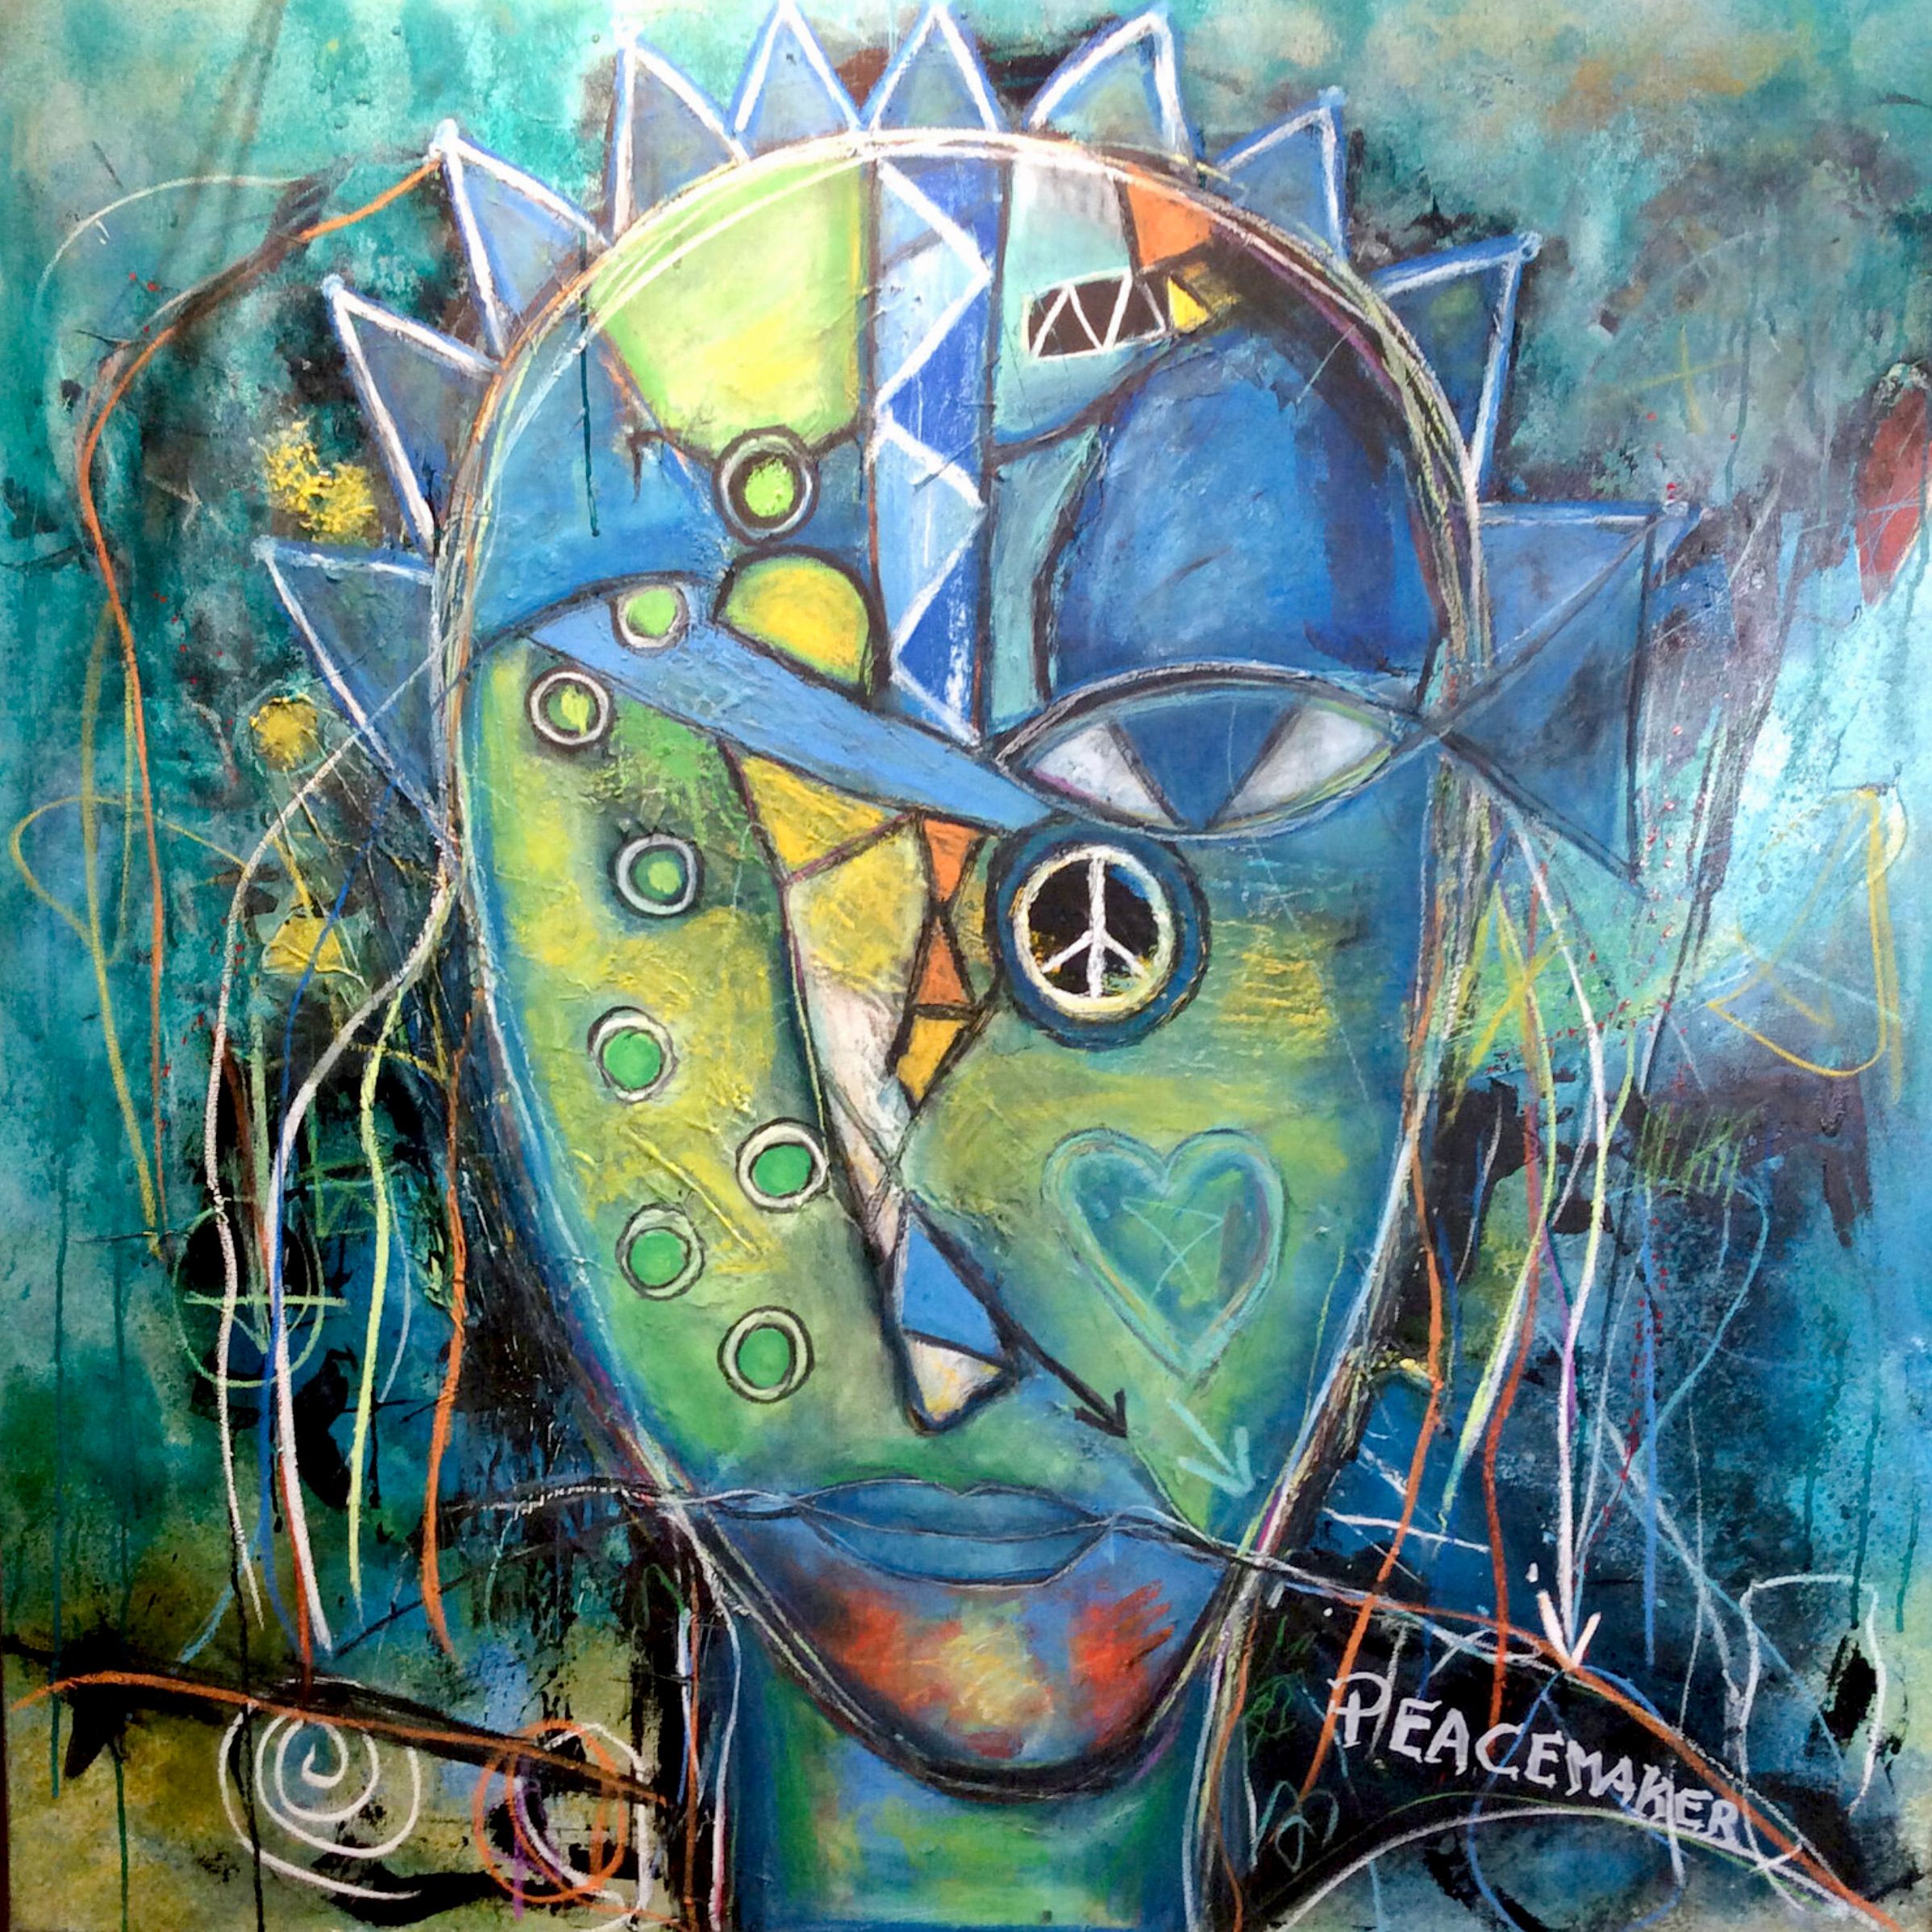 Ilona Schmidt's "The Peacemaker...looking for a new job" expressionistisches Porträtgemälde  zeigt einen Friedensstifter, der nach Stabilität und Sicherheit sucht. Die Farbpalette des Bildes besteht aus verschiedenen Blau-, Gelb- und Grüntönen, die harmonisch miteinander verschmelzen. Das Blau steht für die Ruhe und Stabilität, die der Friedensstifter sucht, während das Gelb die Hoffnung und die positive Ausrichtung seiner Mission symbolisiert.. Grün steht für Natur  und vermittelt ein Gefühl von Wachstum und Entwicklung. 